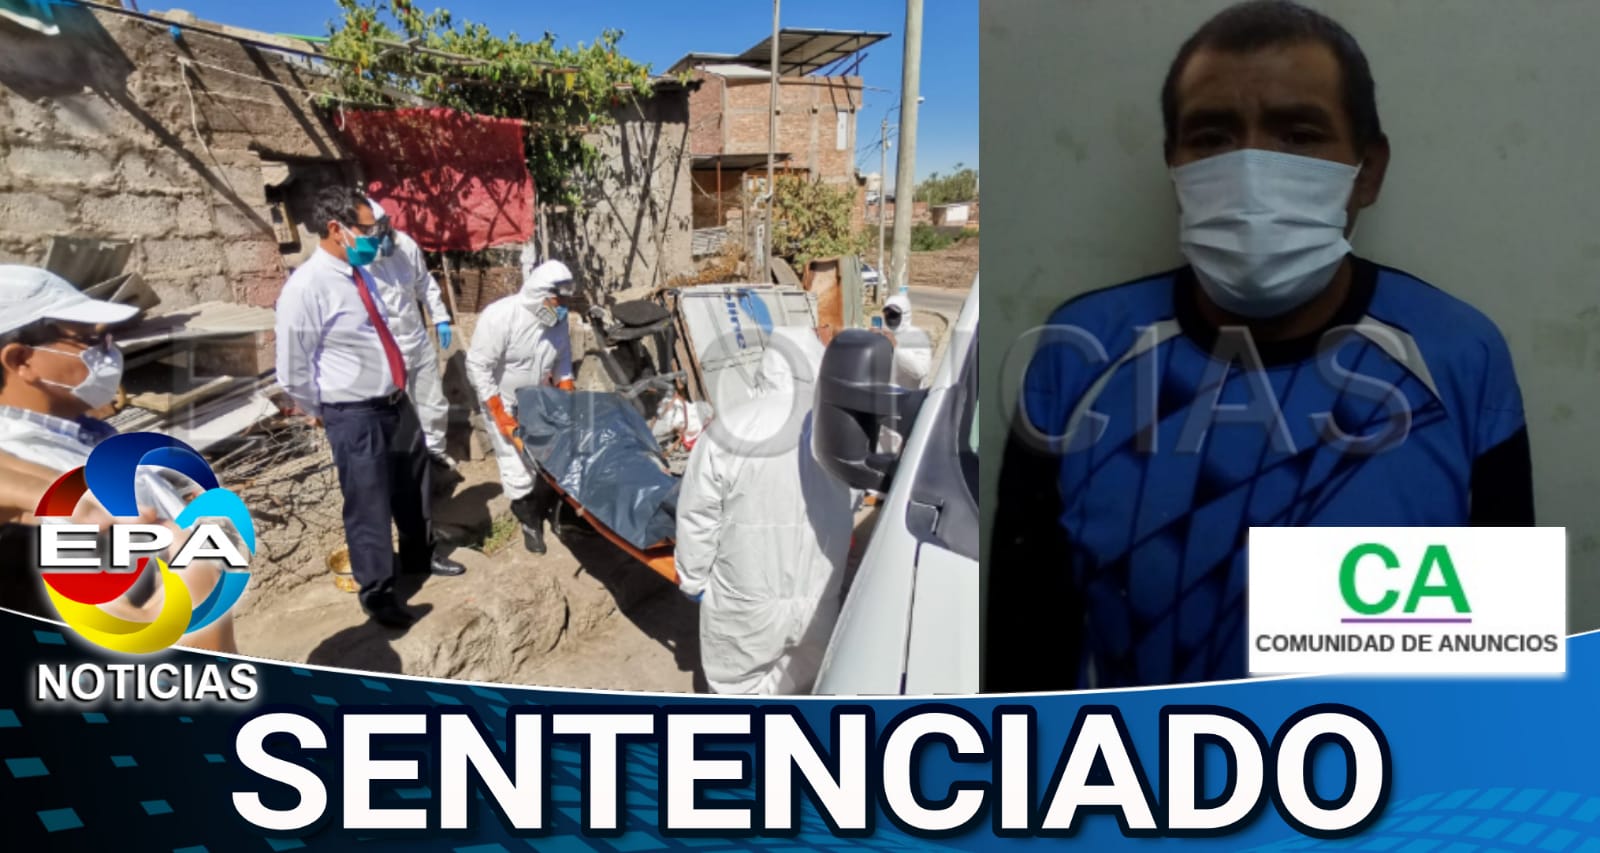 Arequipa. Hijo que agredió a hijo fue sentenciado a servicio comunitario